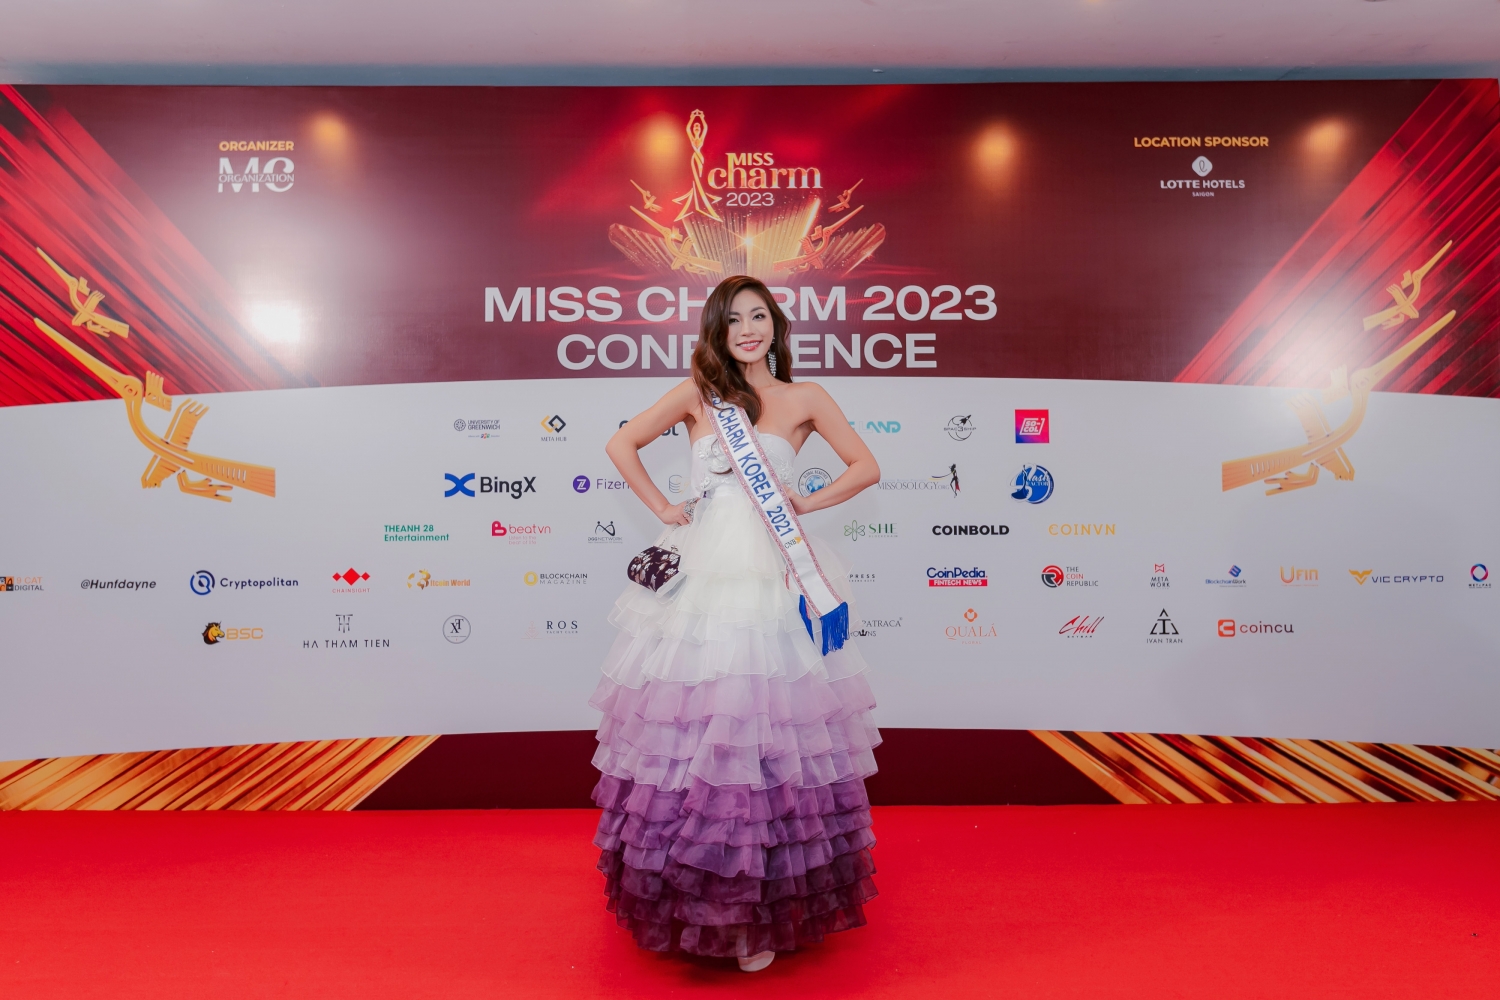 Quỳnh Nga bất ngờ rút khỏi vị trí đại diện Việt Nam tại Miss Charm 2023